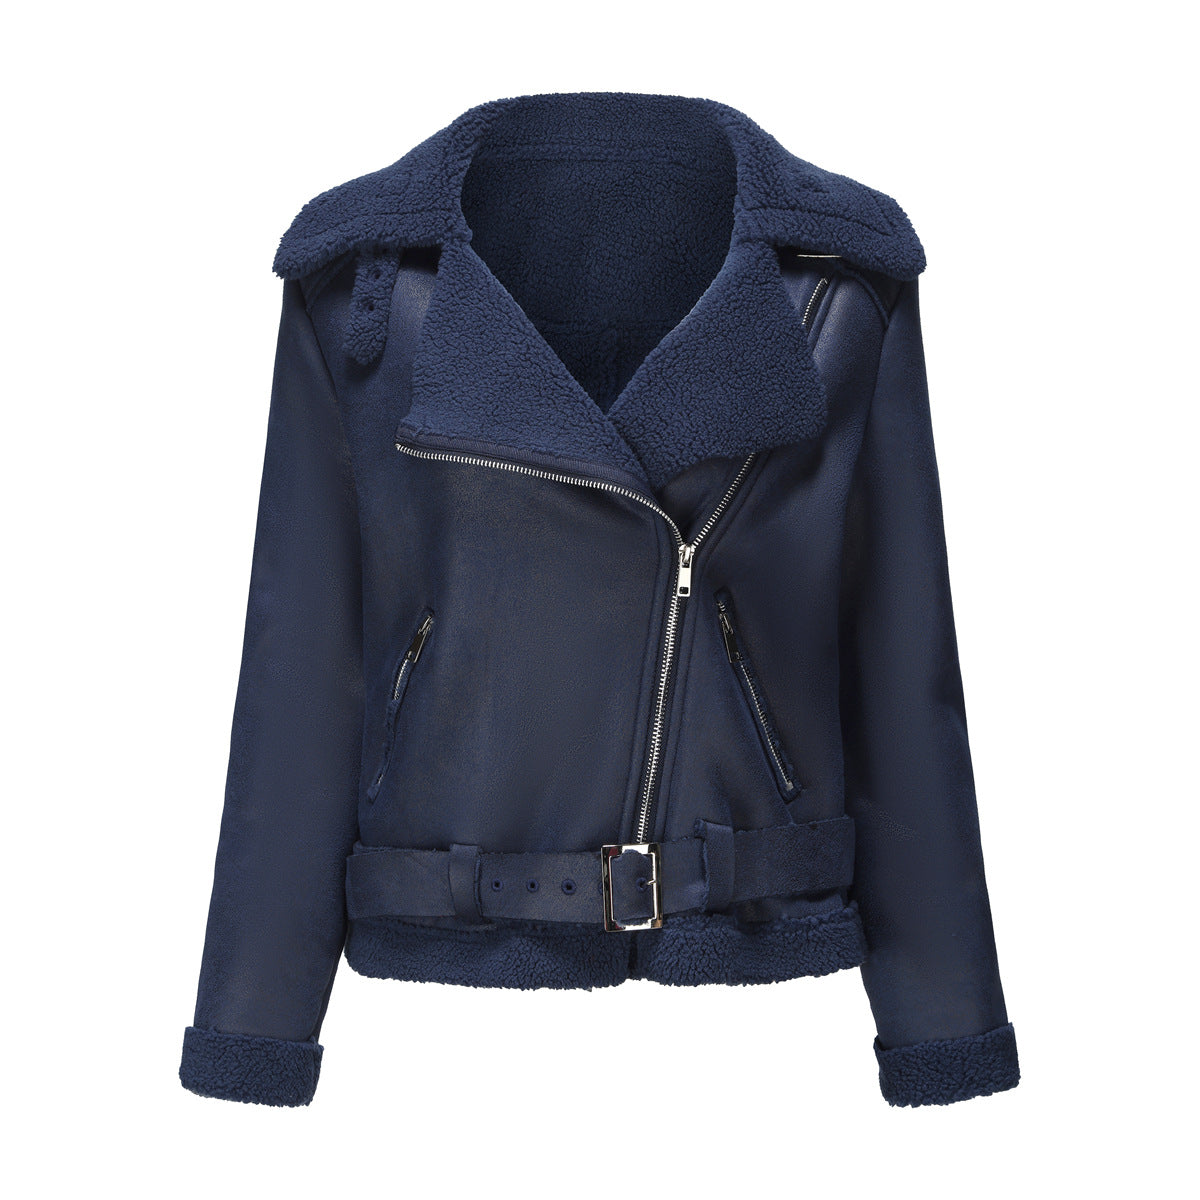 Winter Faux Shearling Warm Jacket for Women - Venus Trendy Fashion Online